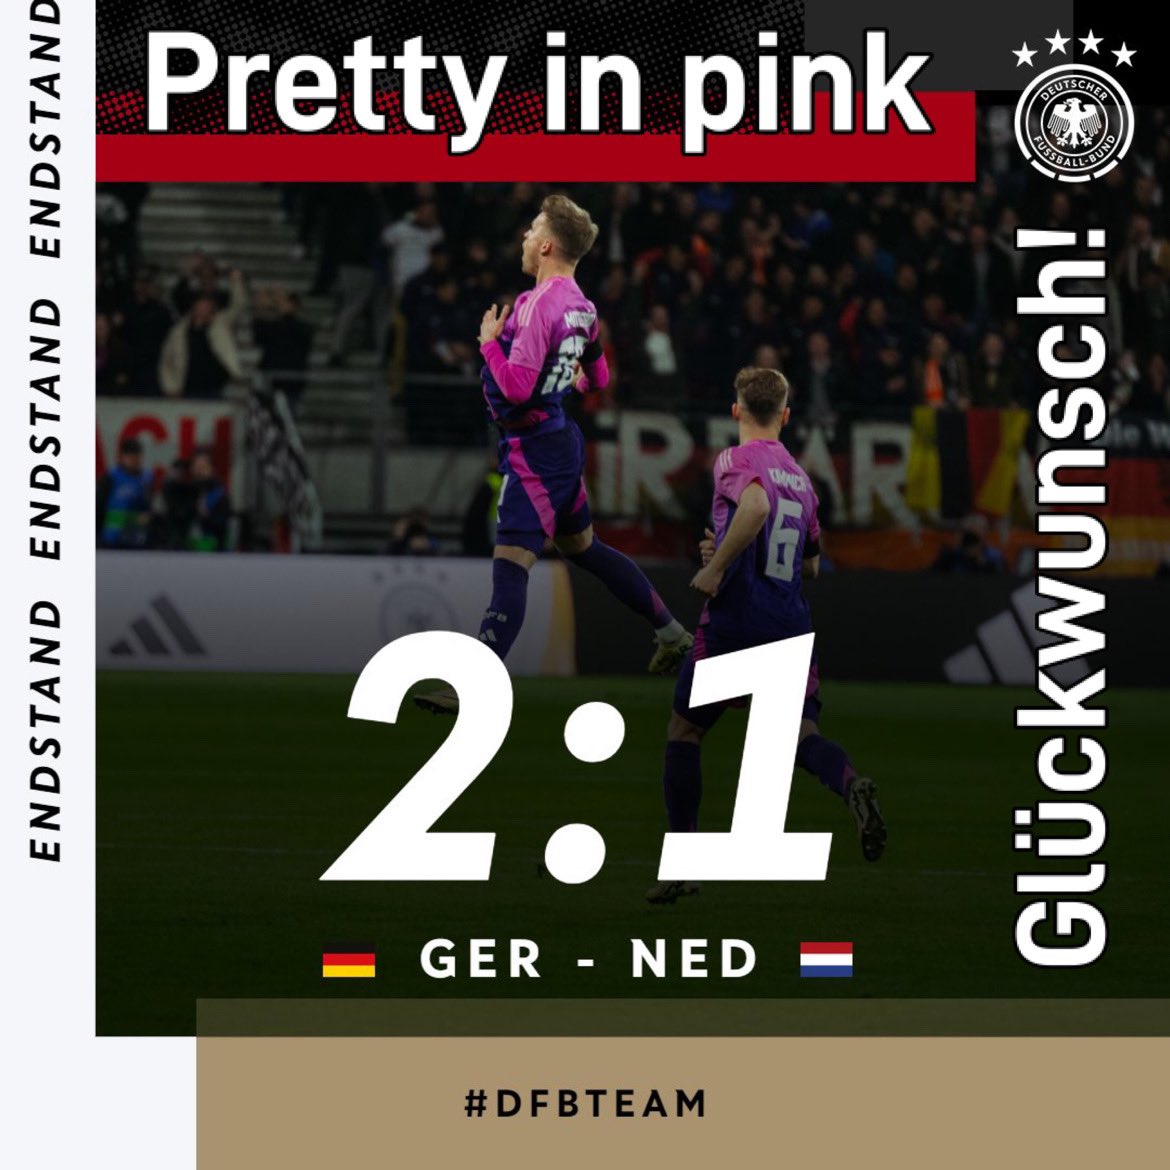 Das war wirklich „pretty in pink“! 😁 Glückwunsch an die 🇩🇪-Nationalmannschaft zum ersten Sieg in PINK! 😁👍🏽 #DFB #GERned #DFBteam #Deutschland